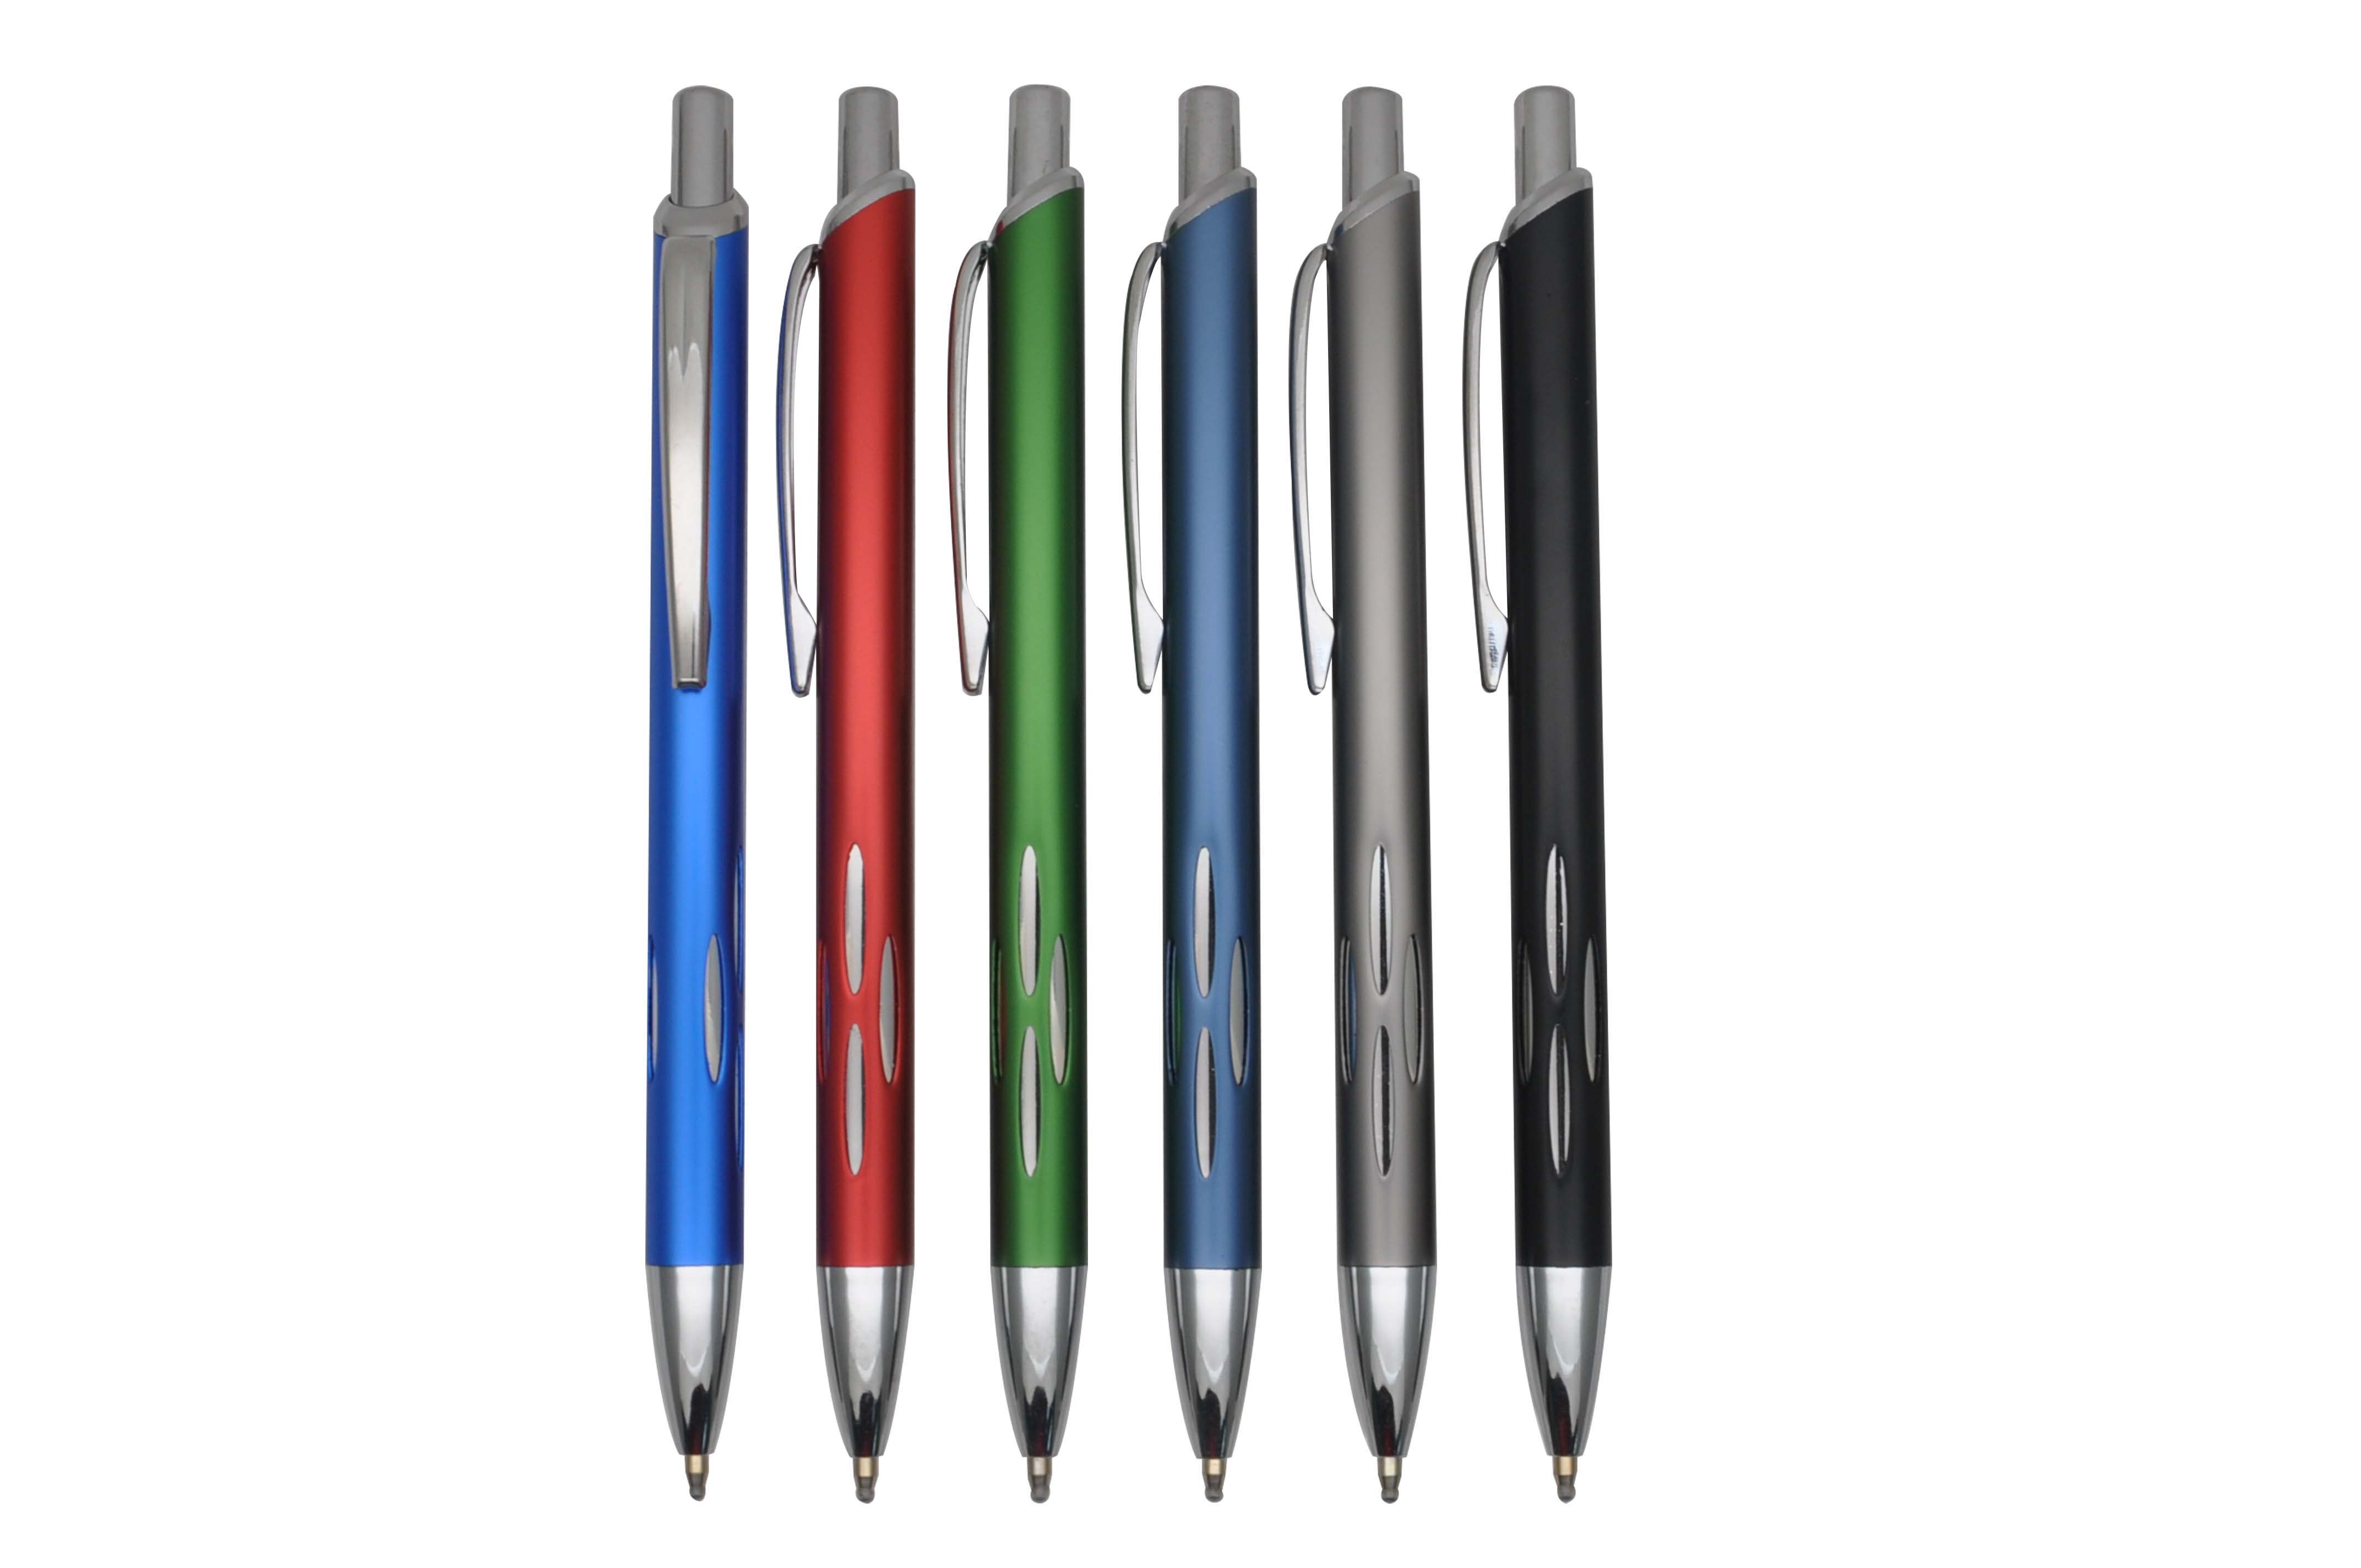 MP1433B metal aluminium ballpoint pen